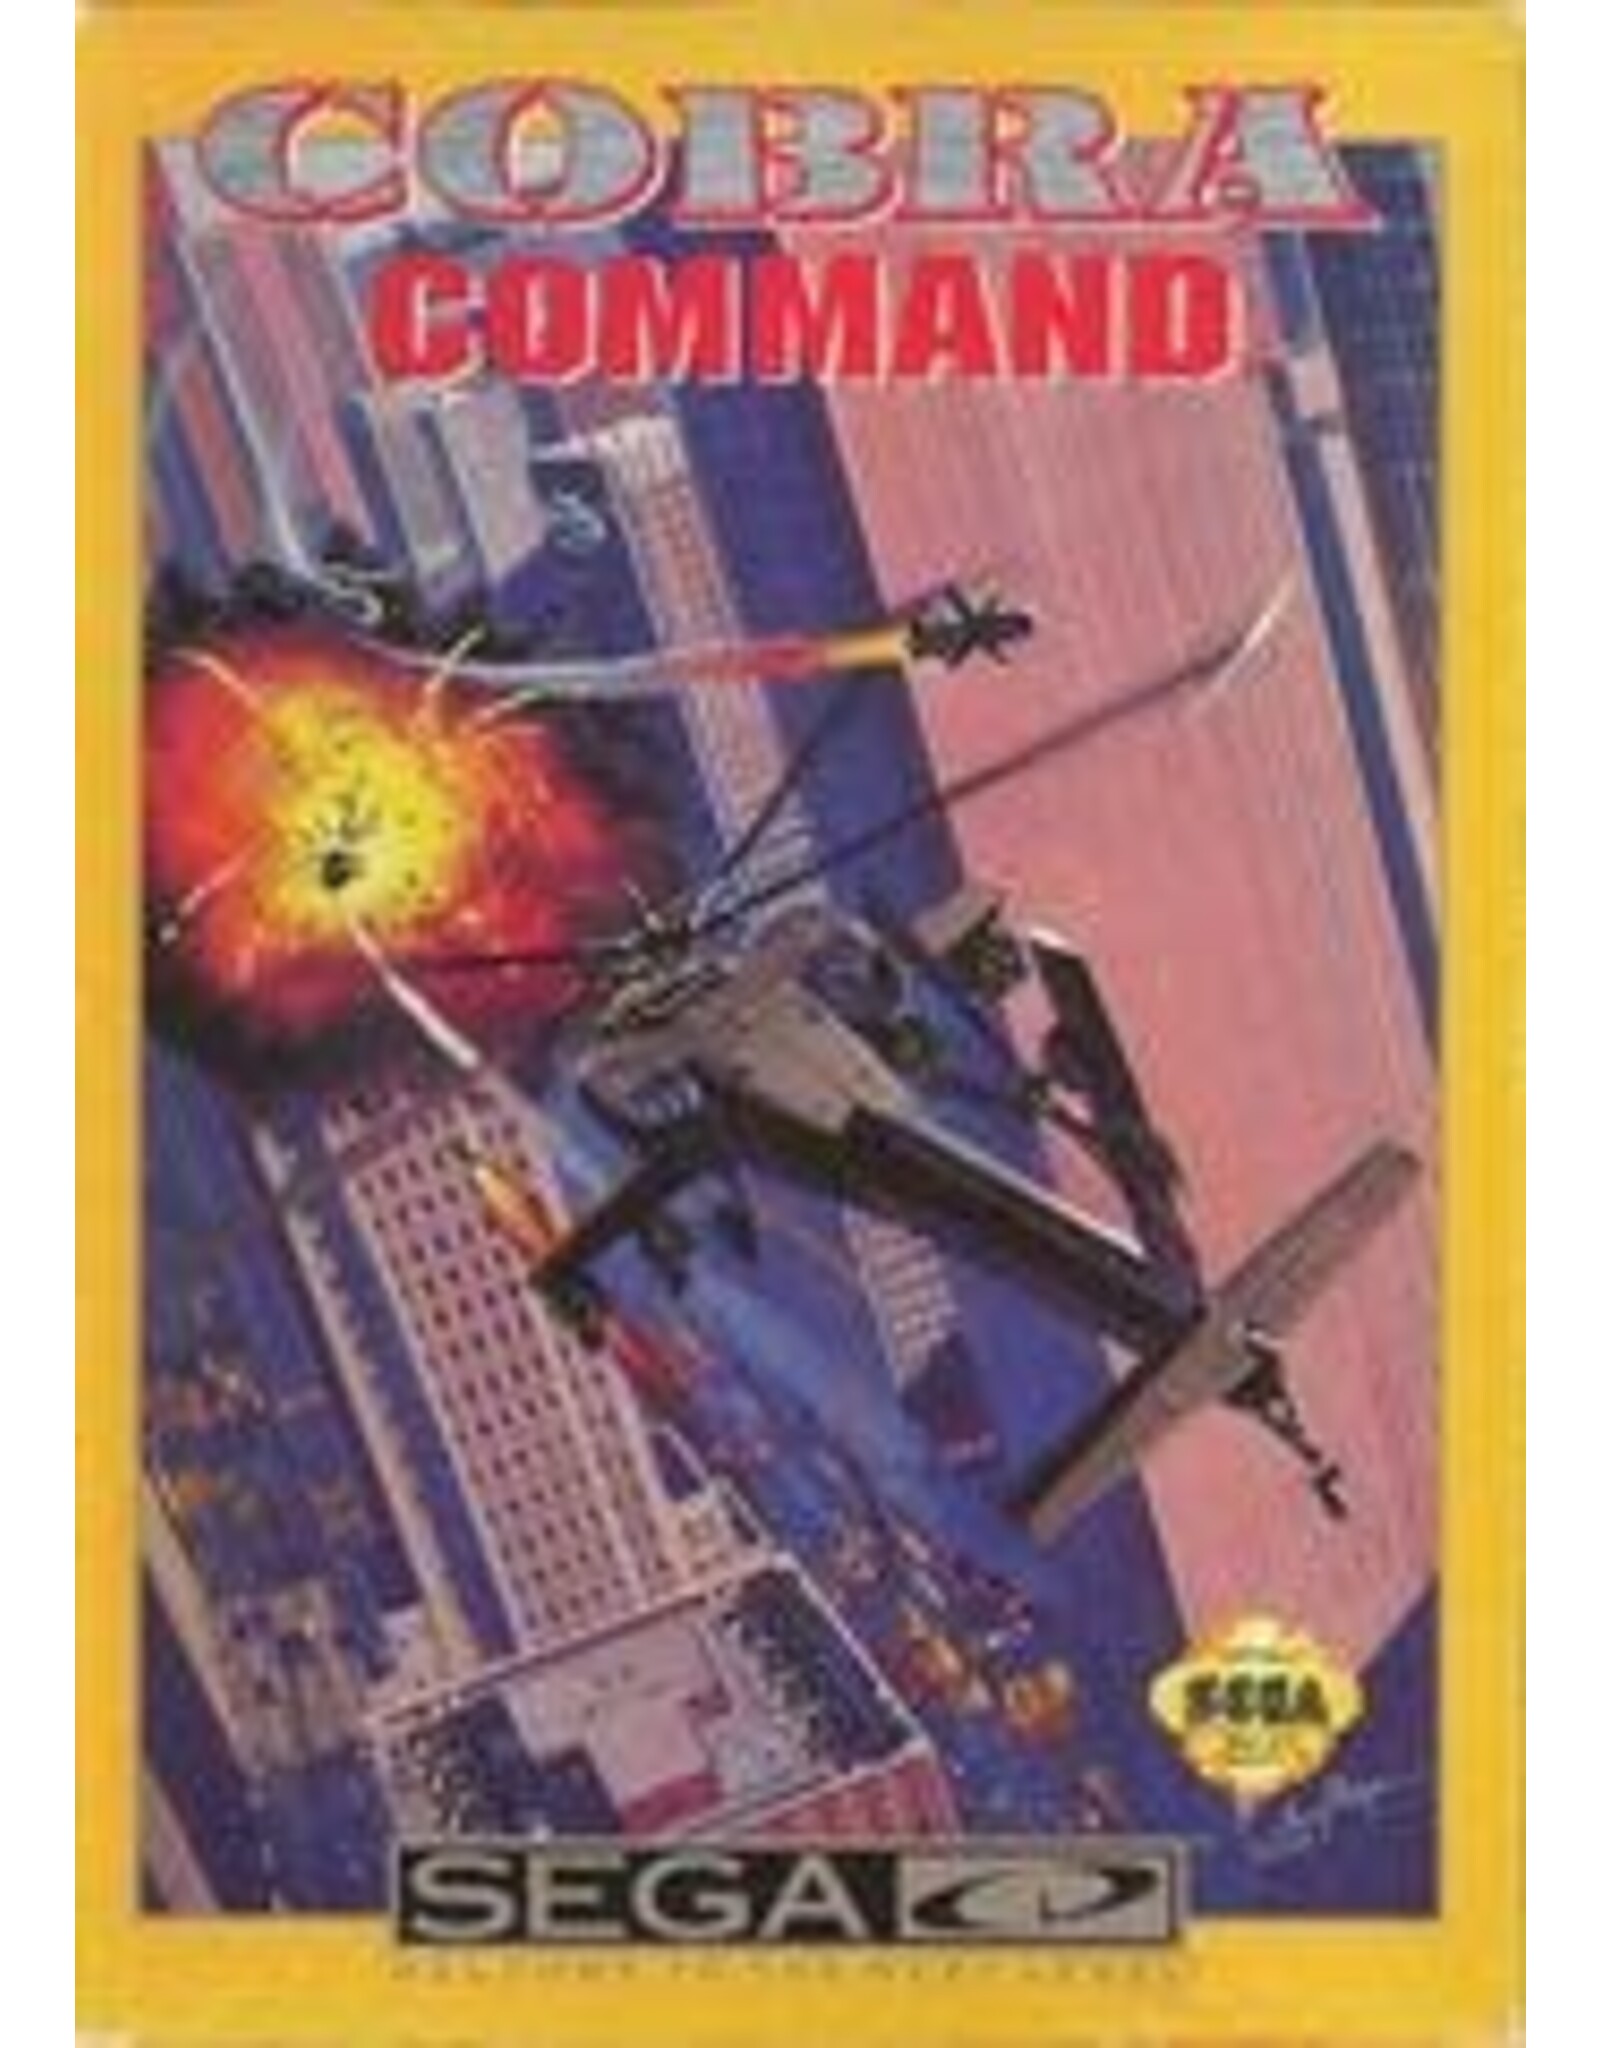 Sega CD Cobra Command (Disc Only)